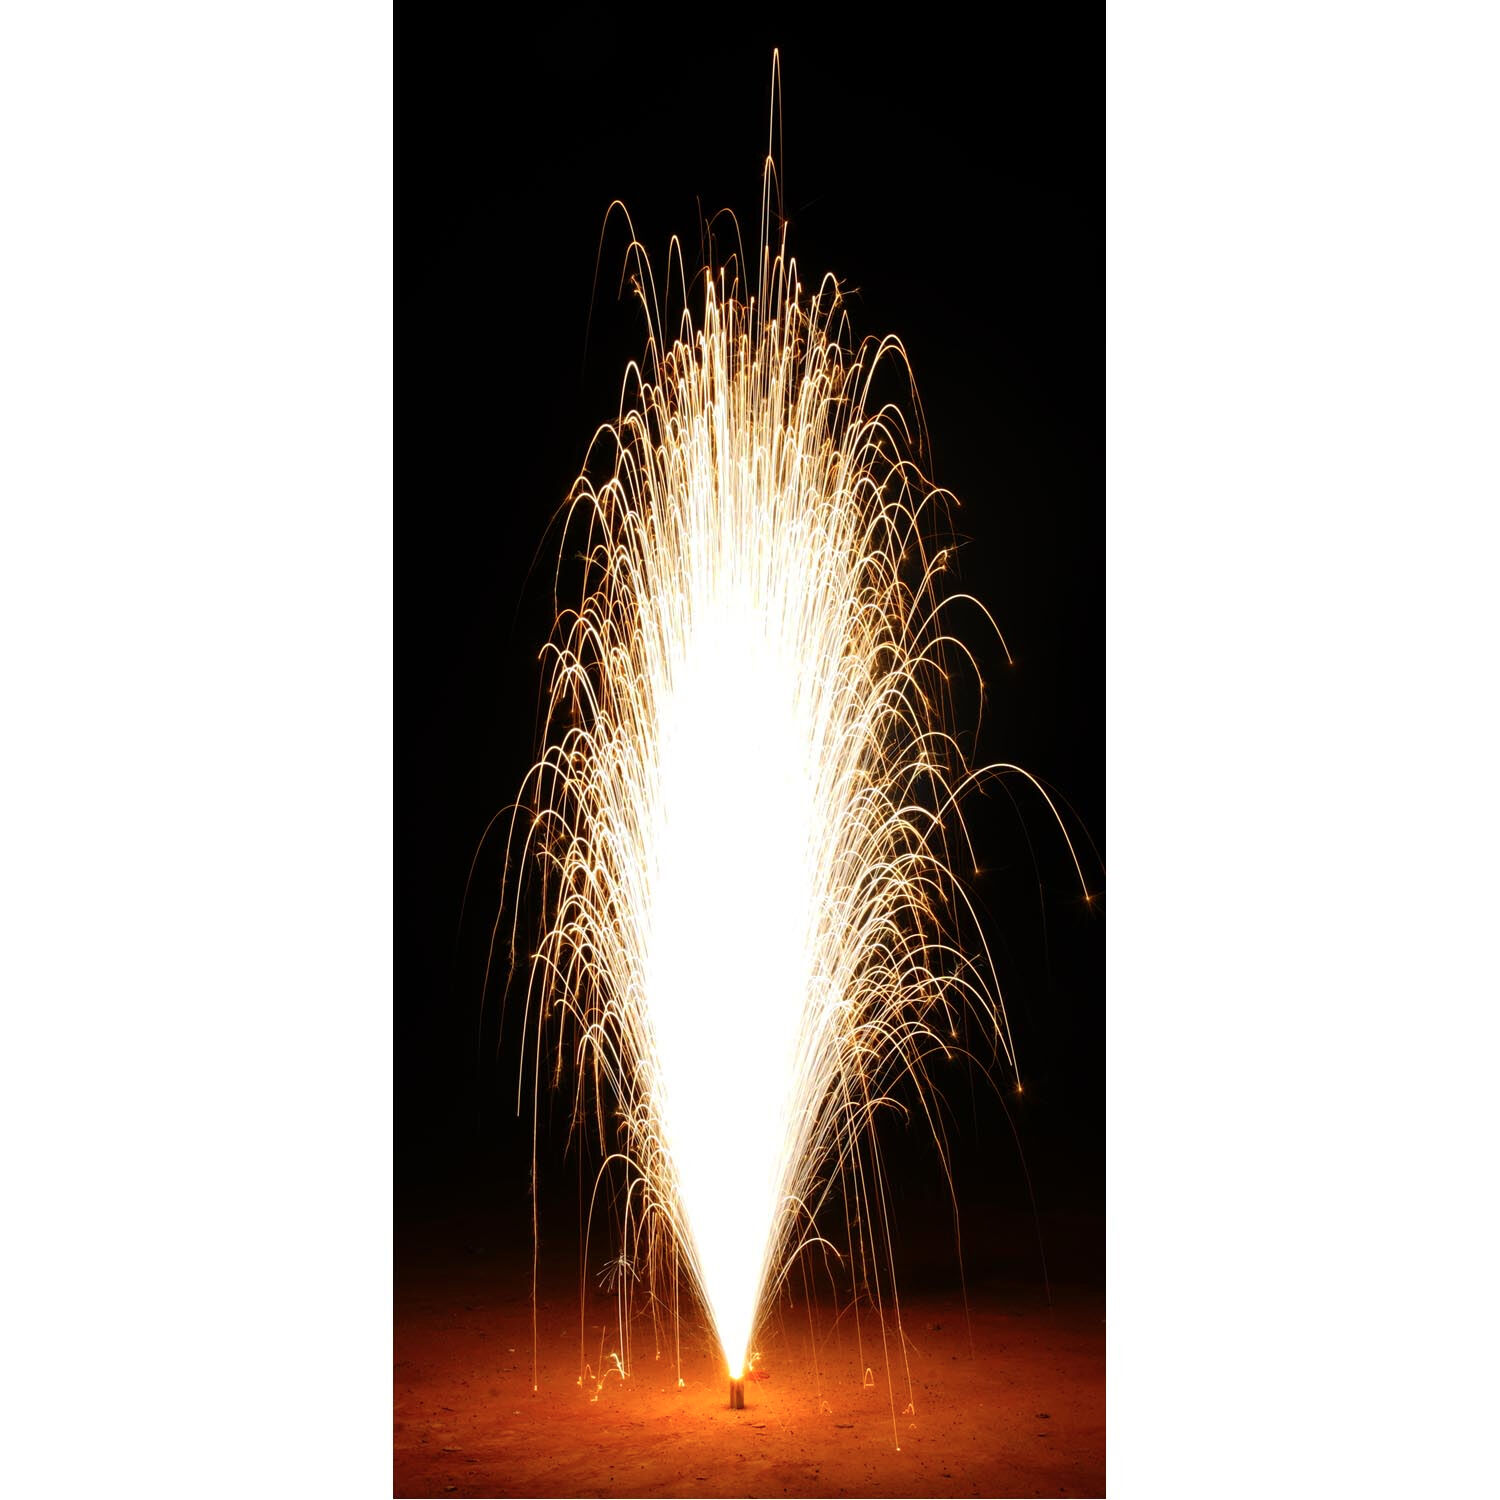 NEU Feuerwerk / Kinder- & Jugendfeuerwerk, Bonsai, Packung mit 1 Stck Bild 2